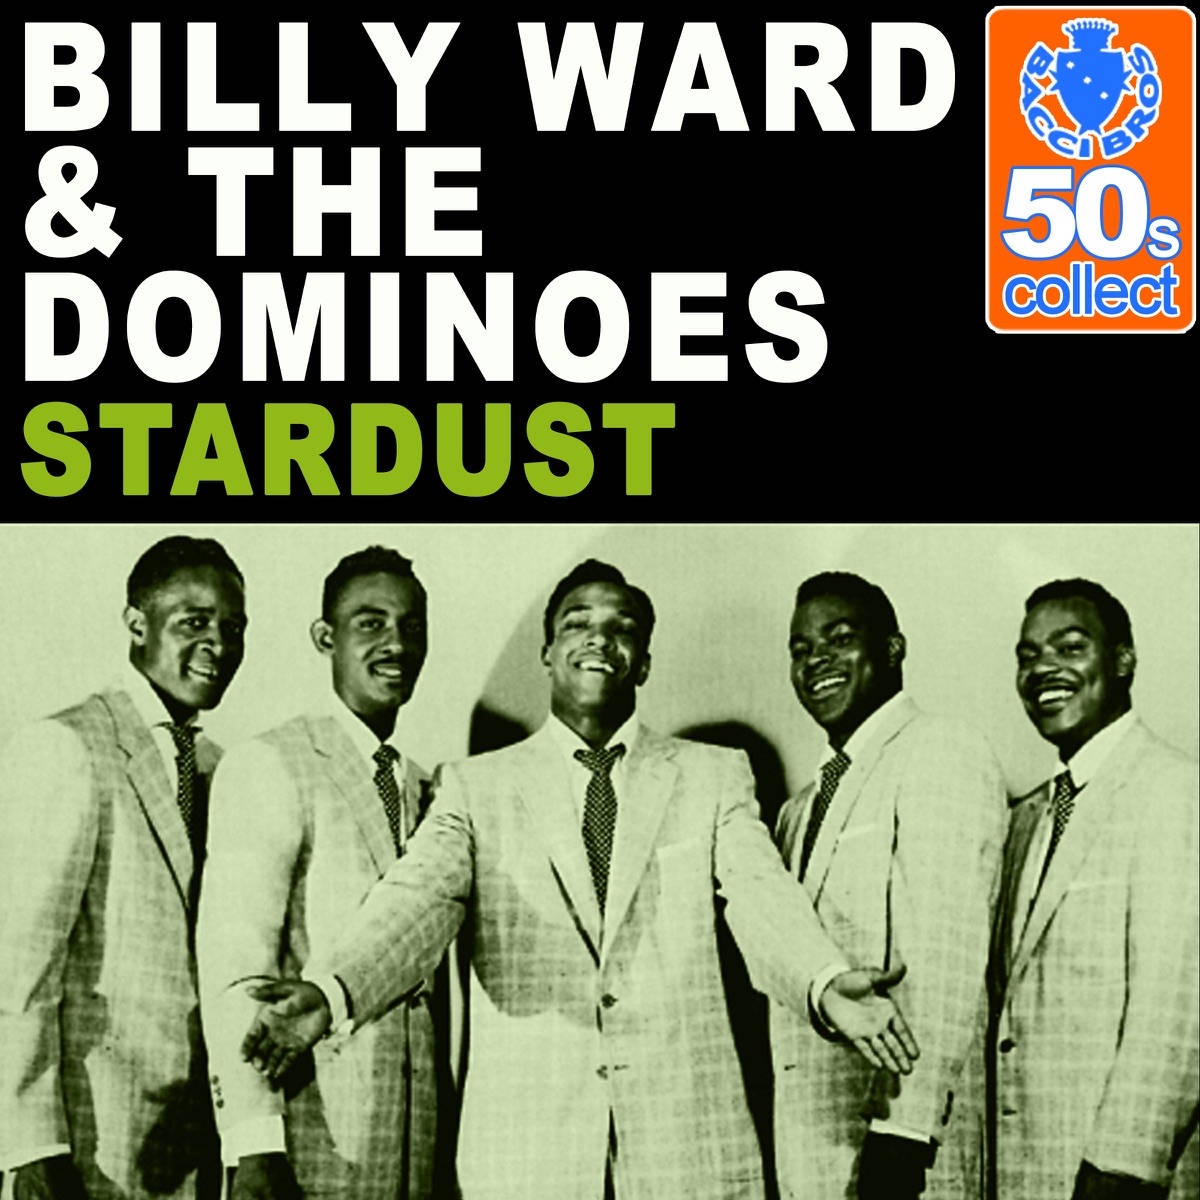 Billyward Och The Dominoes Stardust-albumet. Wallpaper